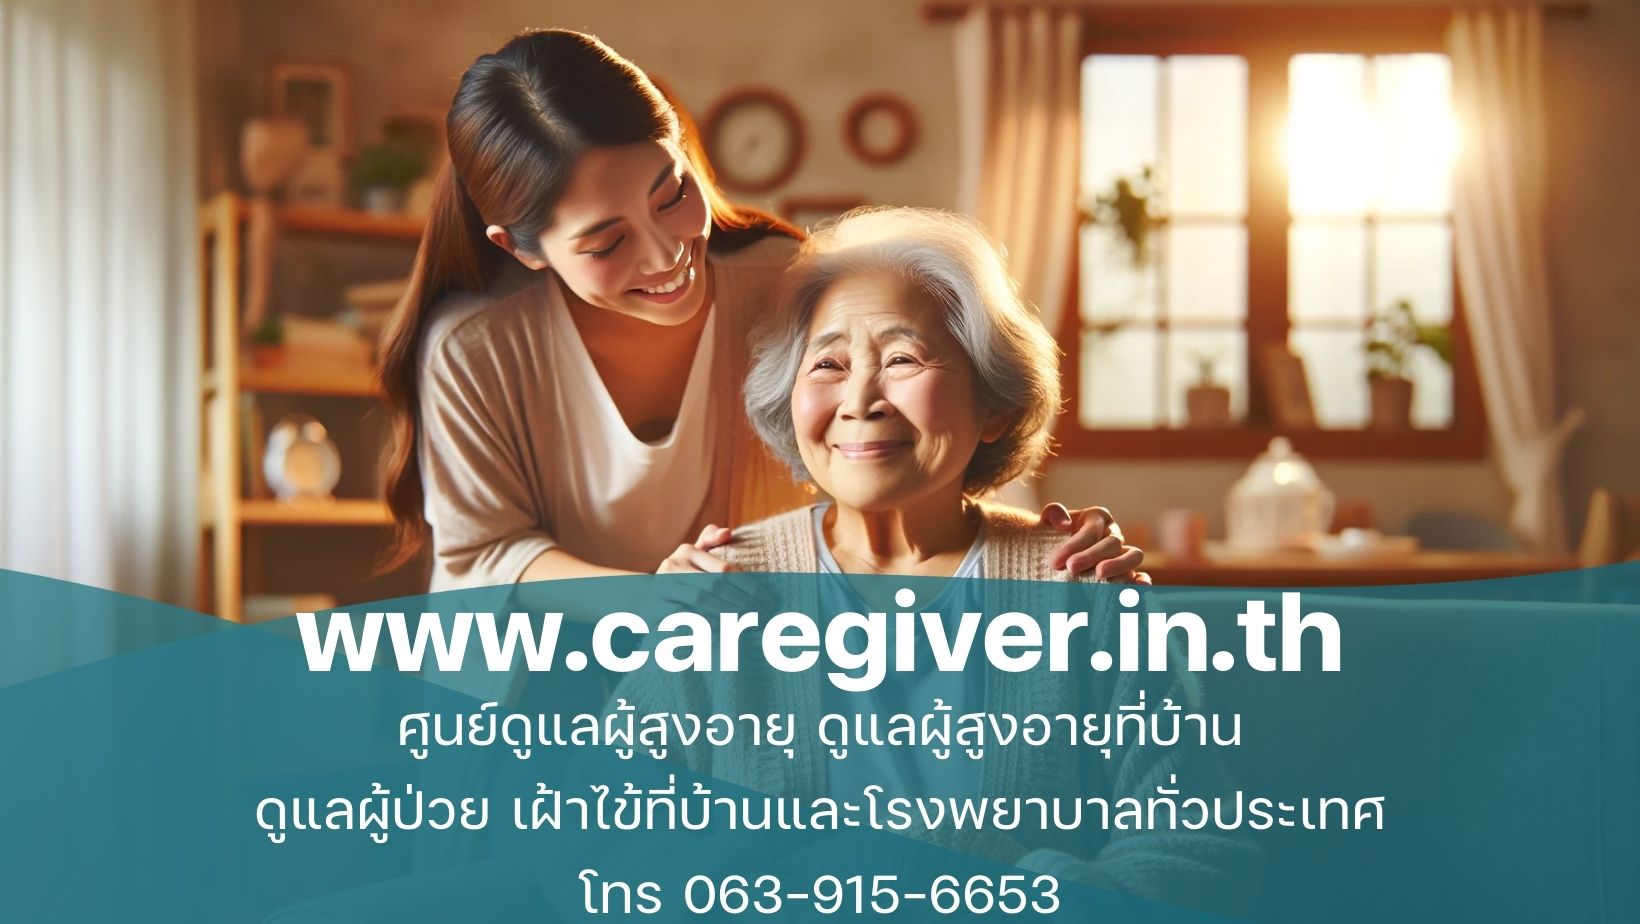 แนวทางการดูแลผู้สูงอายุที่บ้านอย่างมืออาชีพ Caregiver รับดูแลผู้สูงอายุ ดูแลผู้ป่วยตามบ้านและ